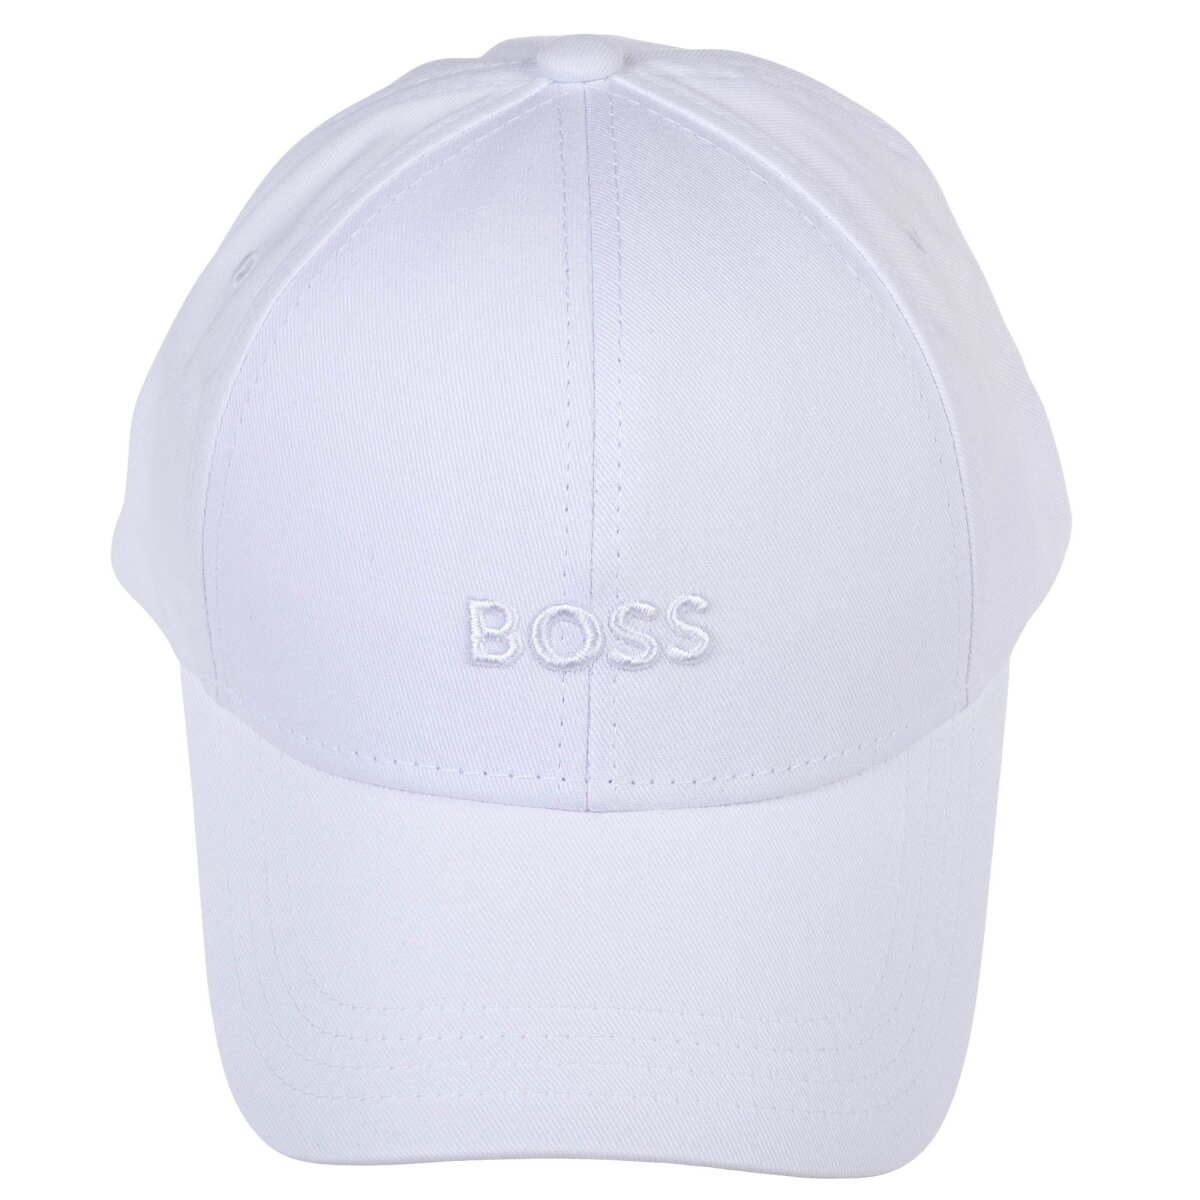 Baseball BOSS Cap 27,95 One Size, € einfa, - Zed, Cap, Herren Baumwolle, Logo,